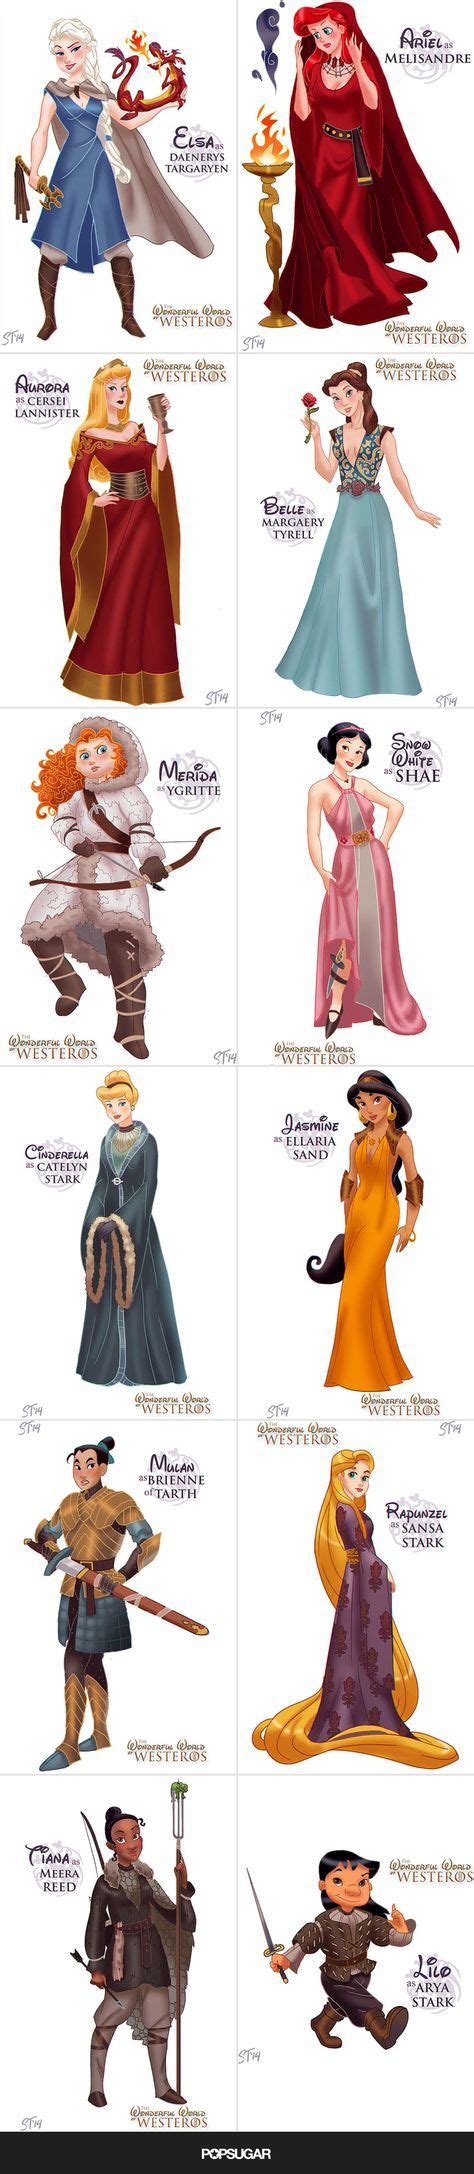 disney princesses as the women of game of thrones filmverrückt disfraces juego de tronos